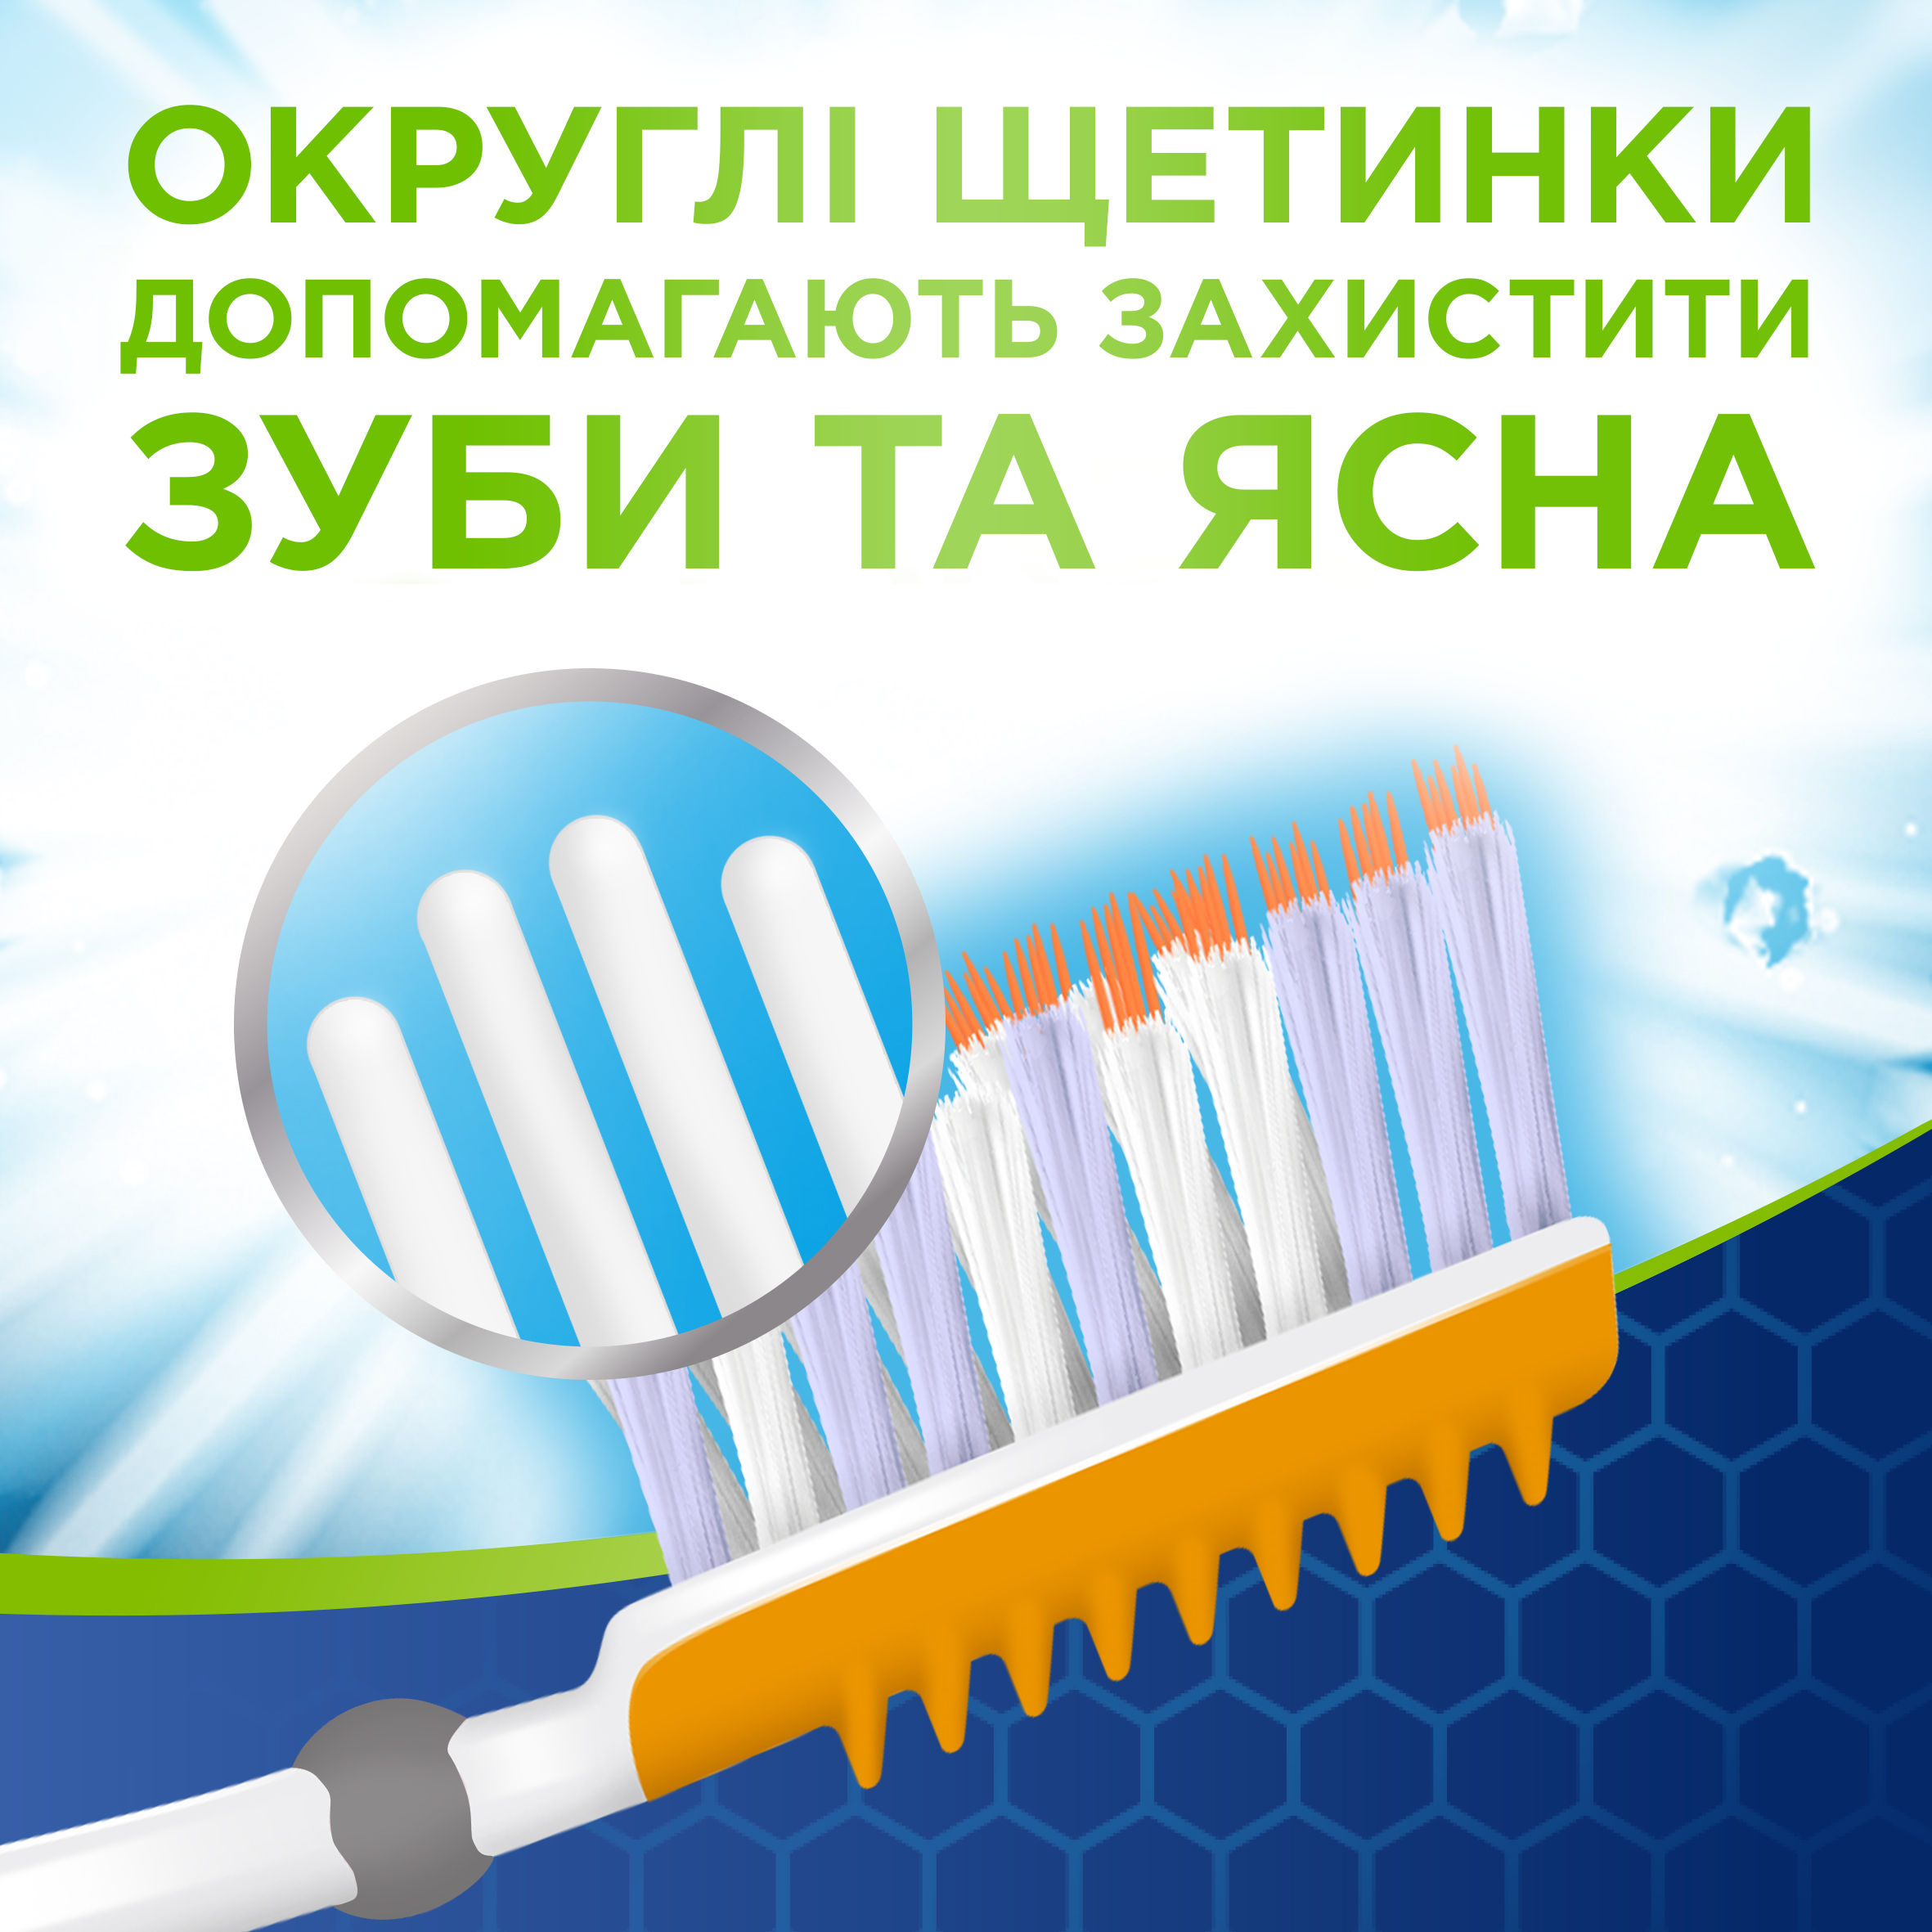 Зубная щетка Aquafresh Extreme Clean Medium 1+1, средняя, в ассортименте, 2 шт. - фото 7